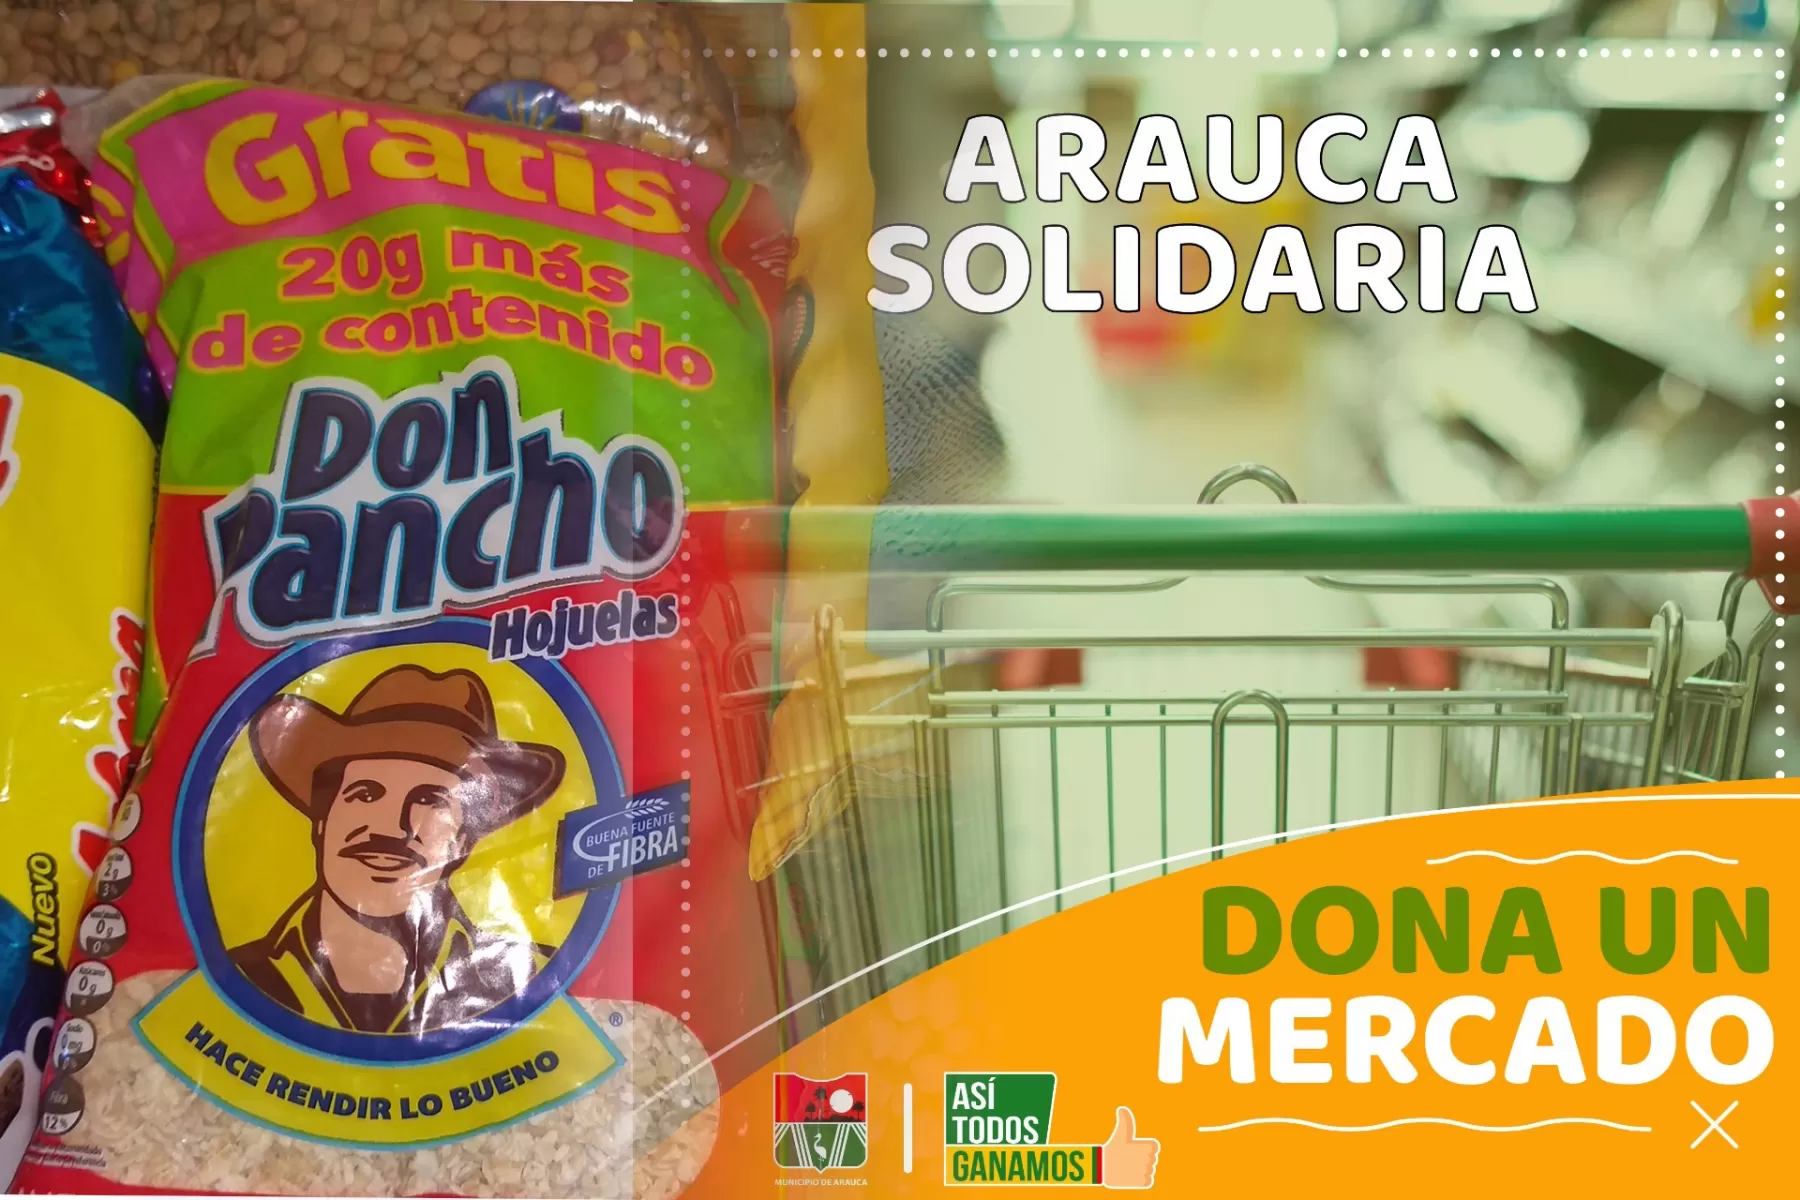 Alcalde de Arauca pide solidaridad por los más necesitados, pide a empelados públicos y privados donar un marcado a una familia necesitada. 